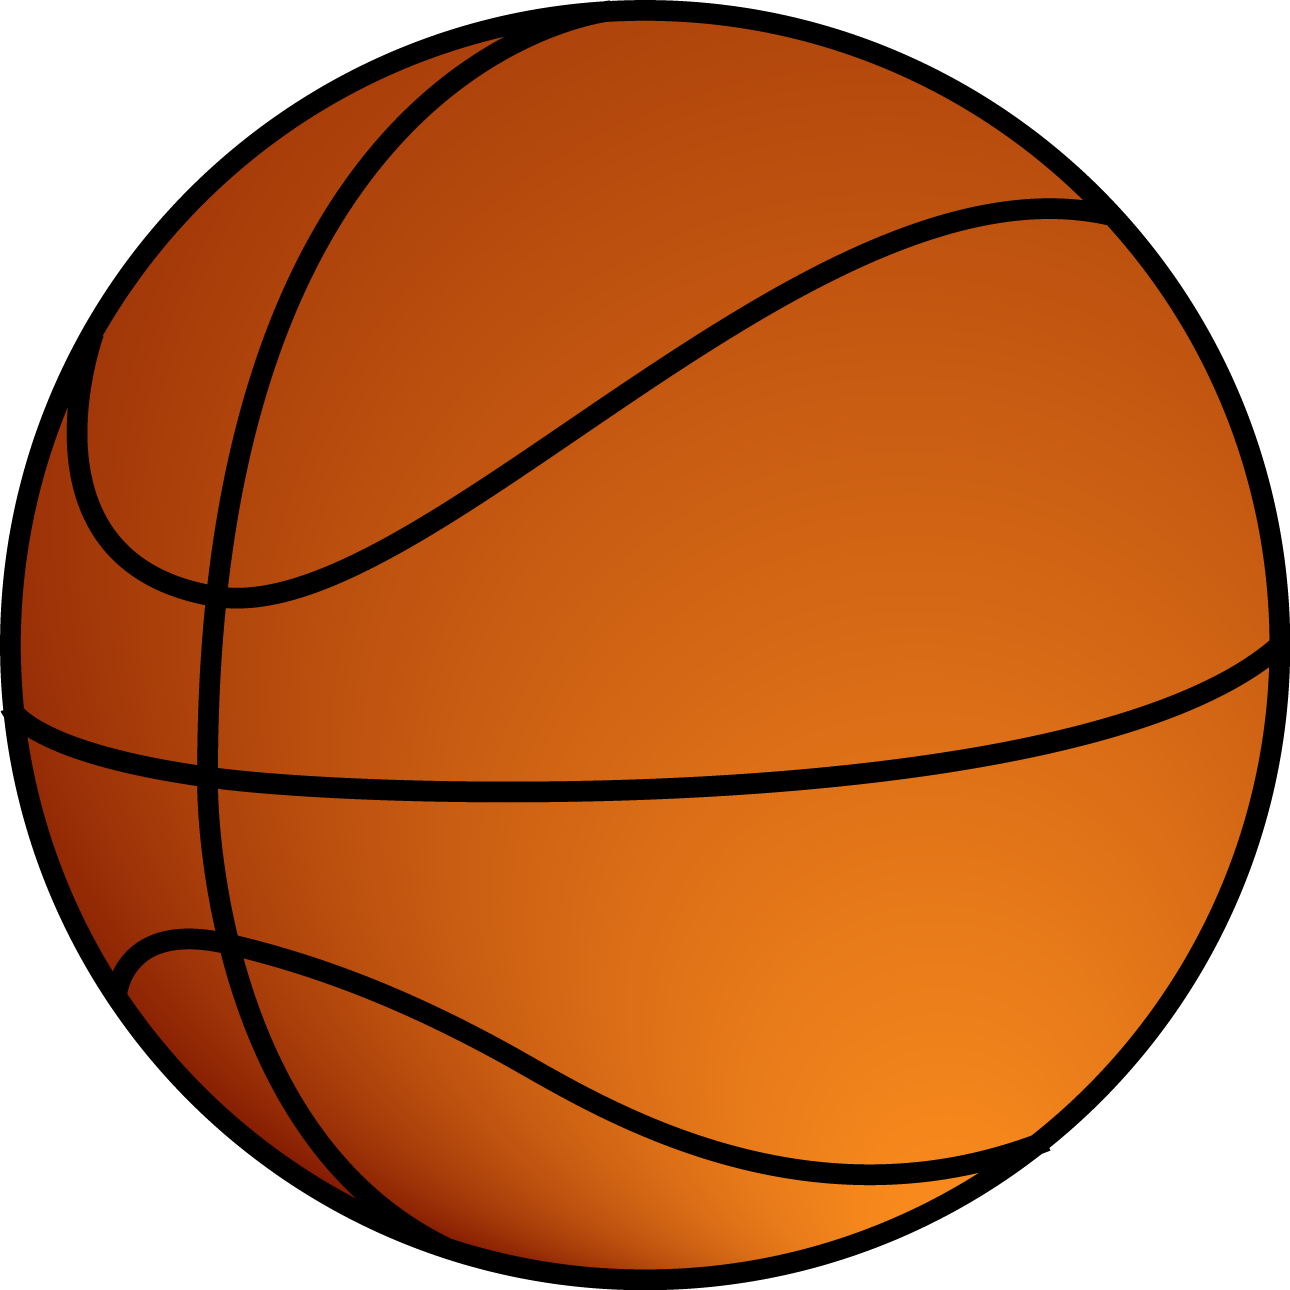 balon de baloncesto7